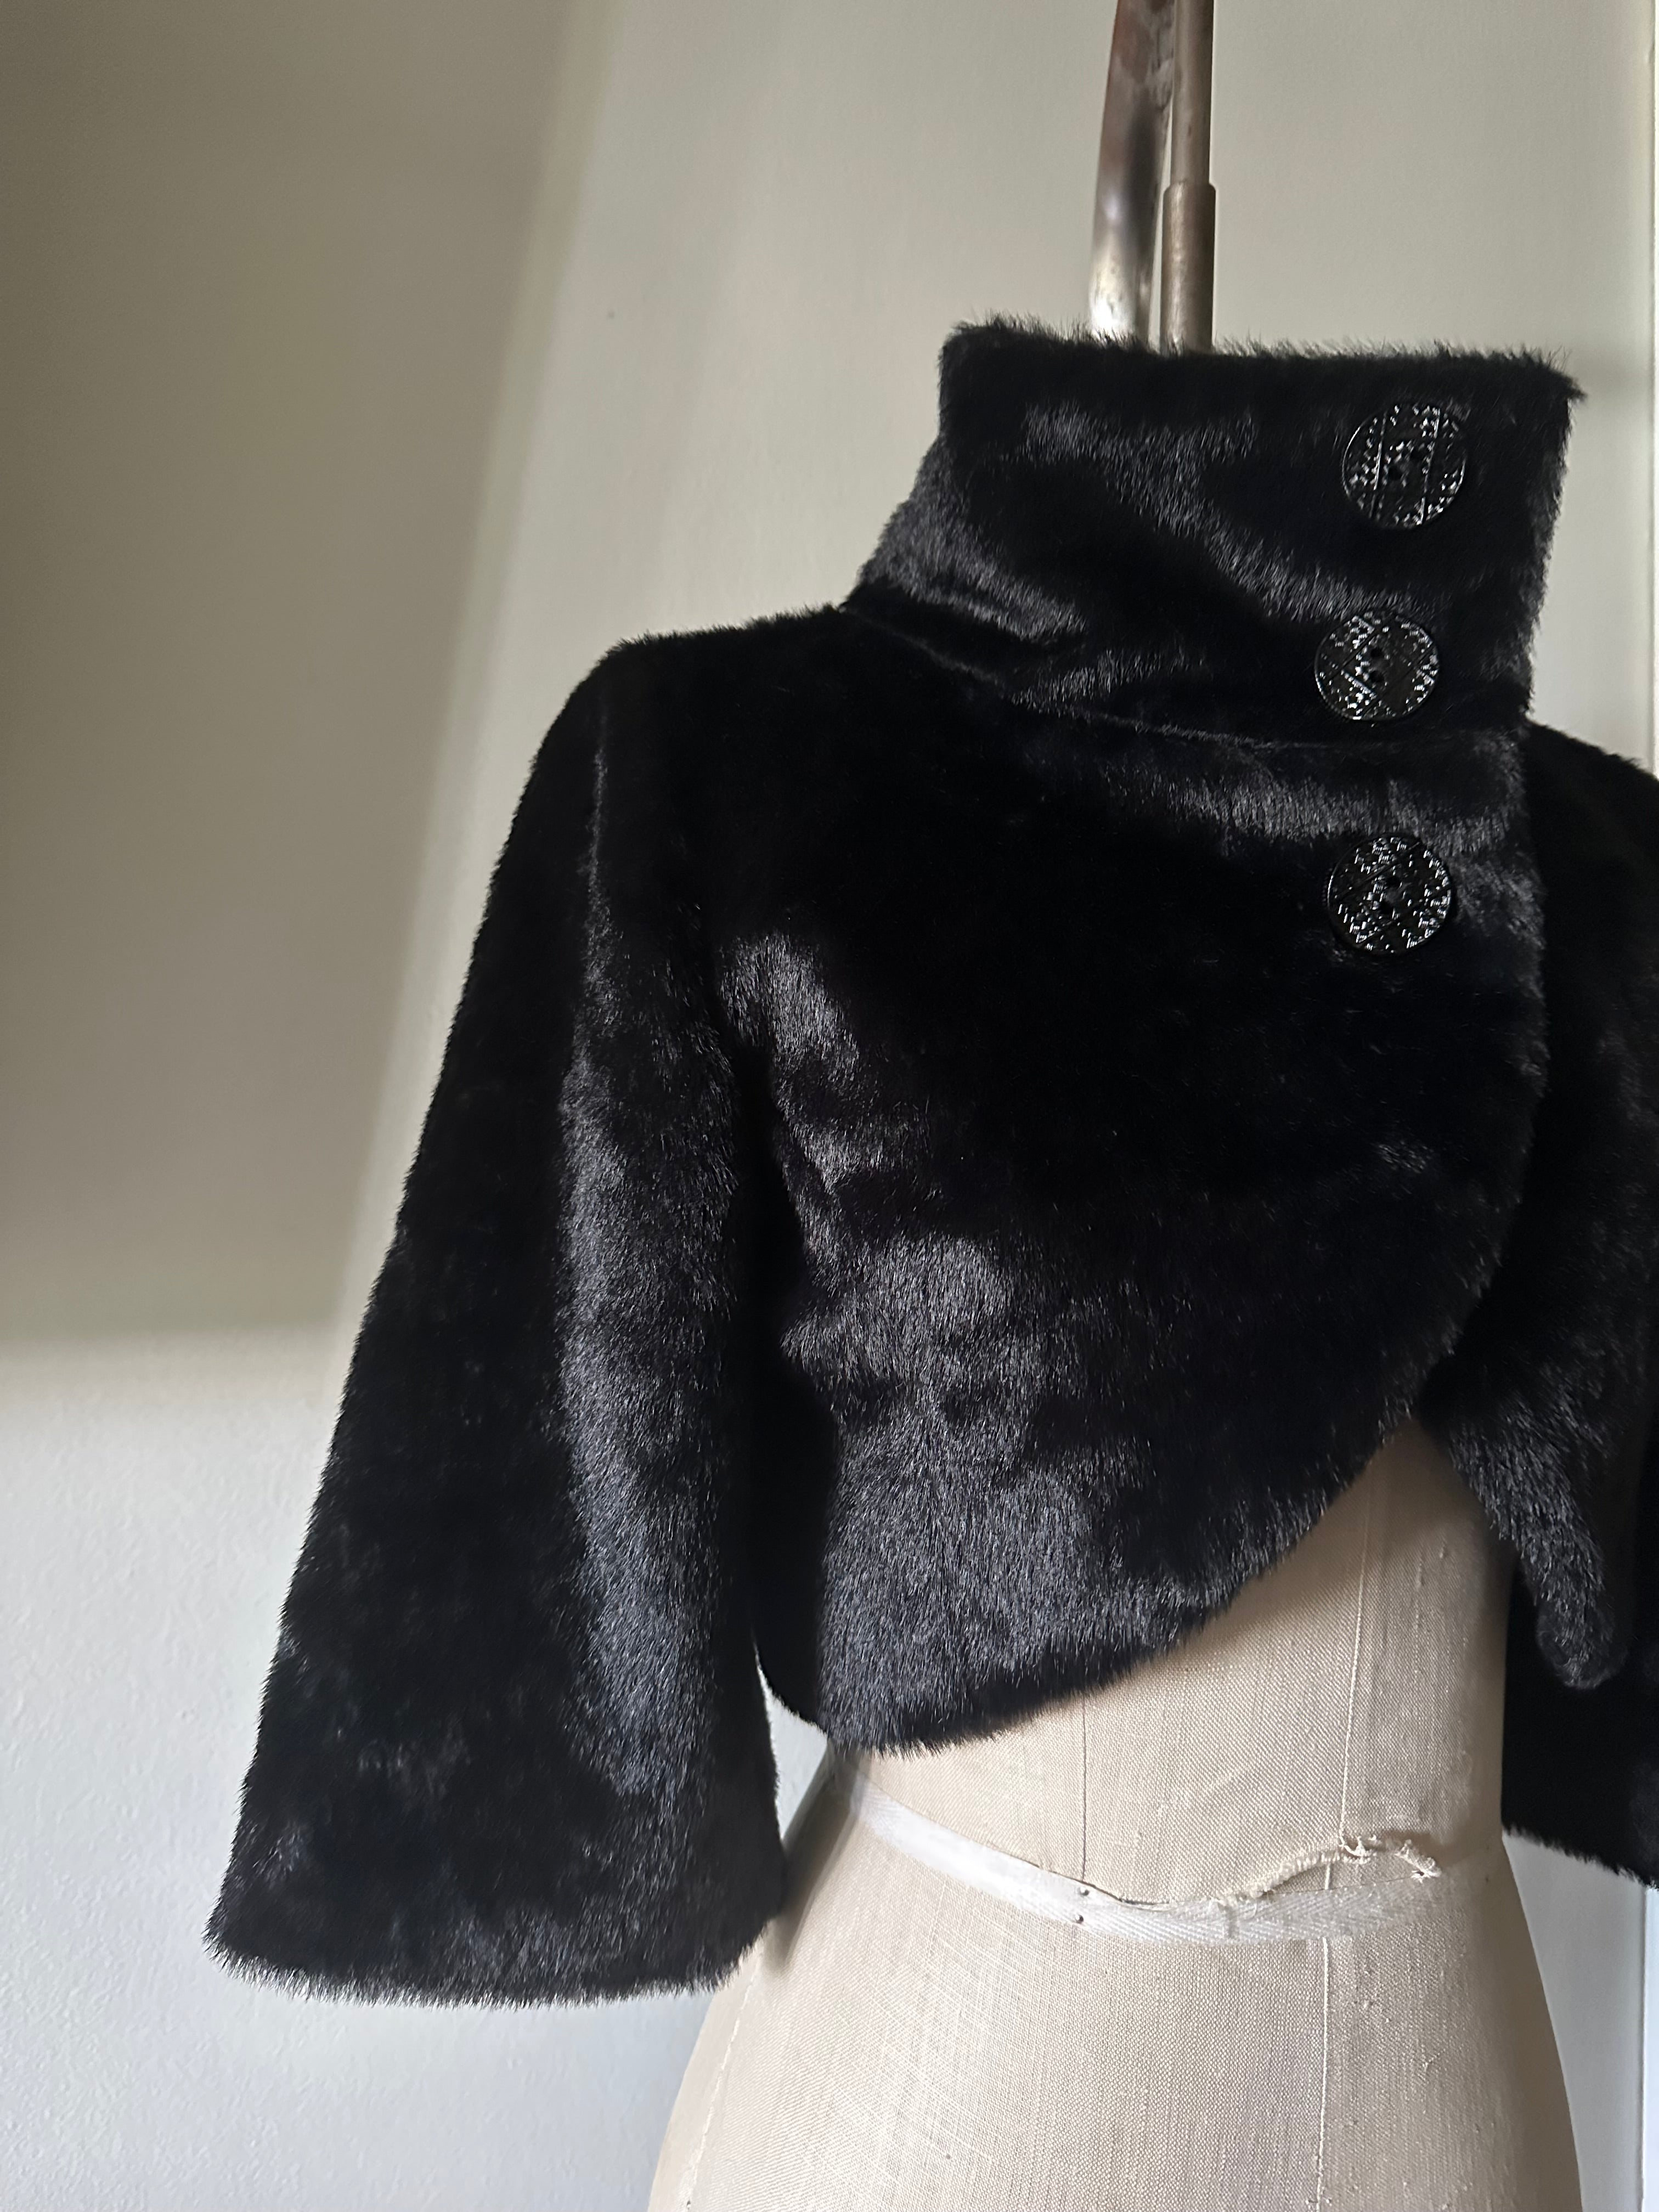 Ladies Black Faux Fur Cropped Jacket